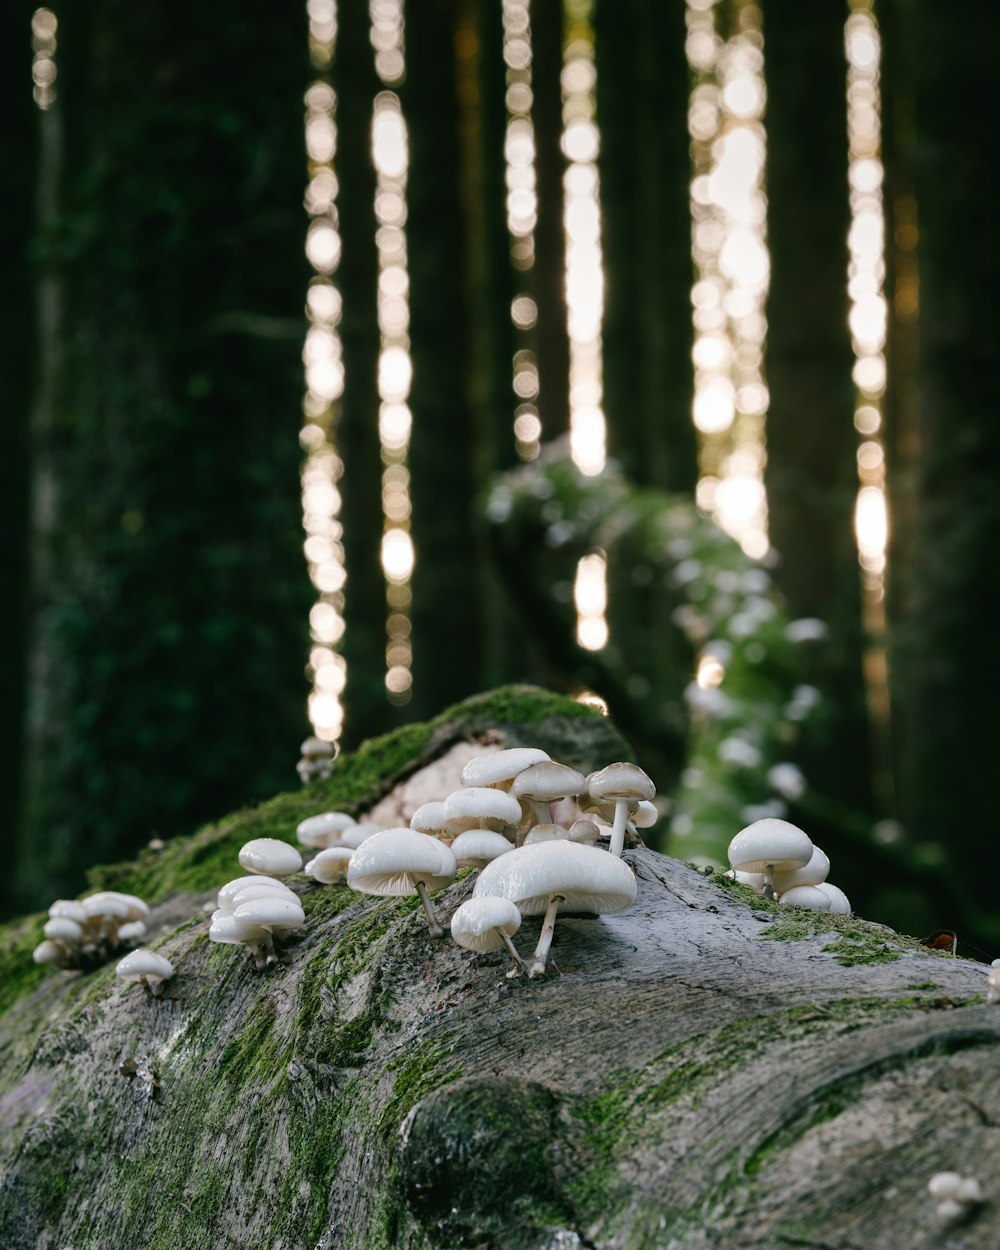 갈색 나무 줄기에 흰 버섯